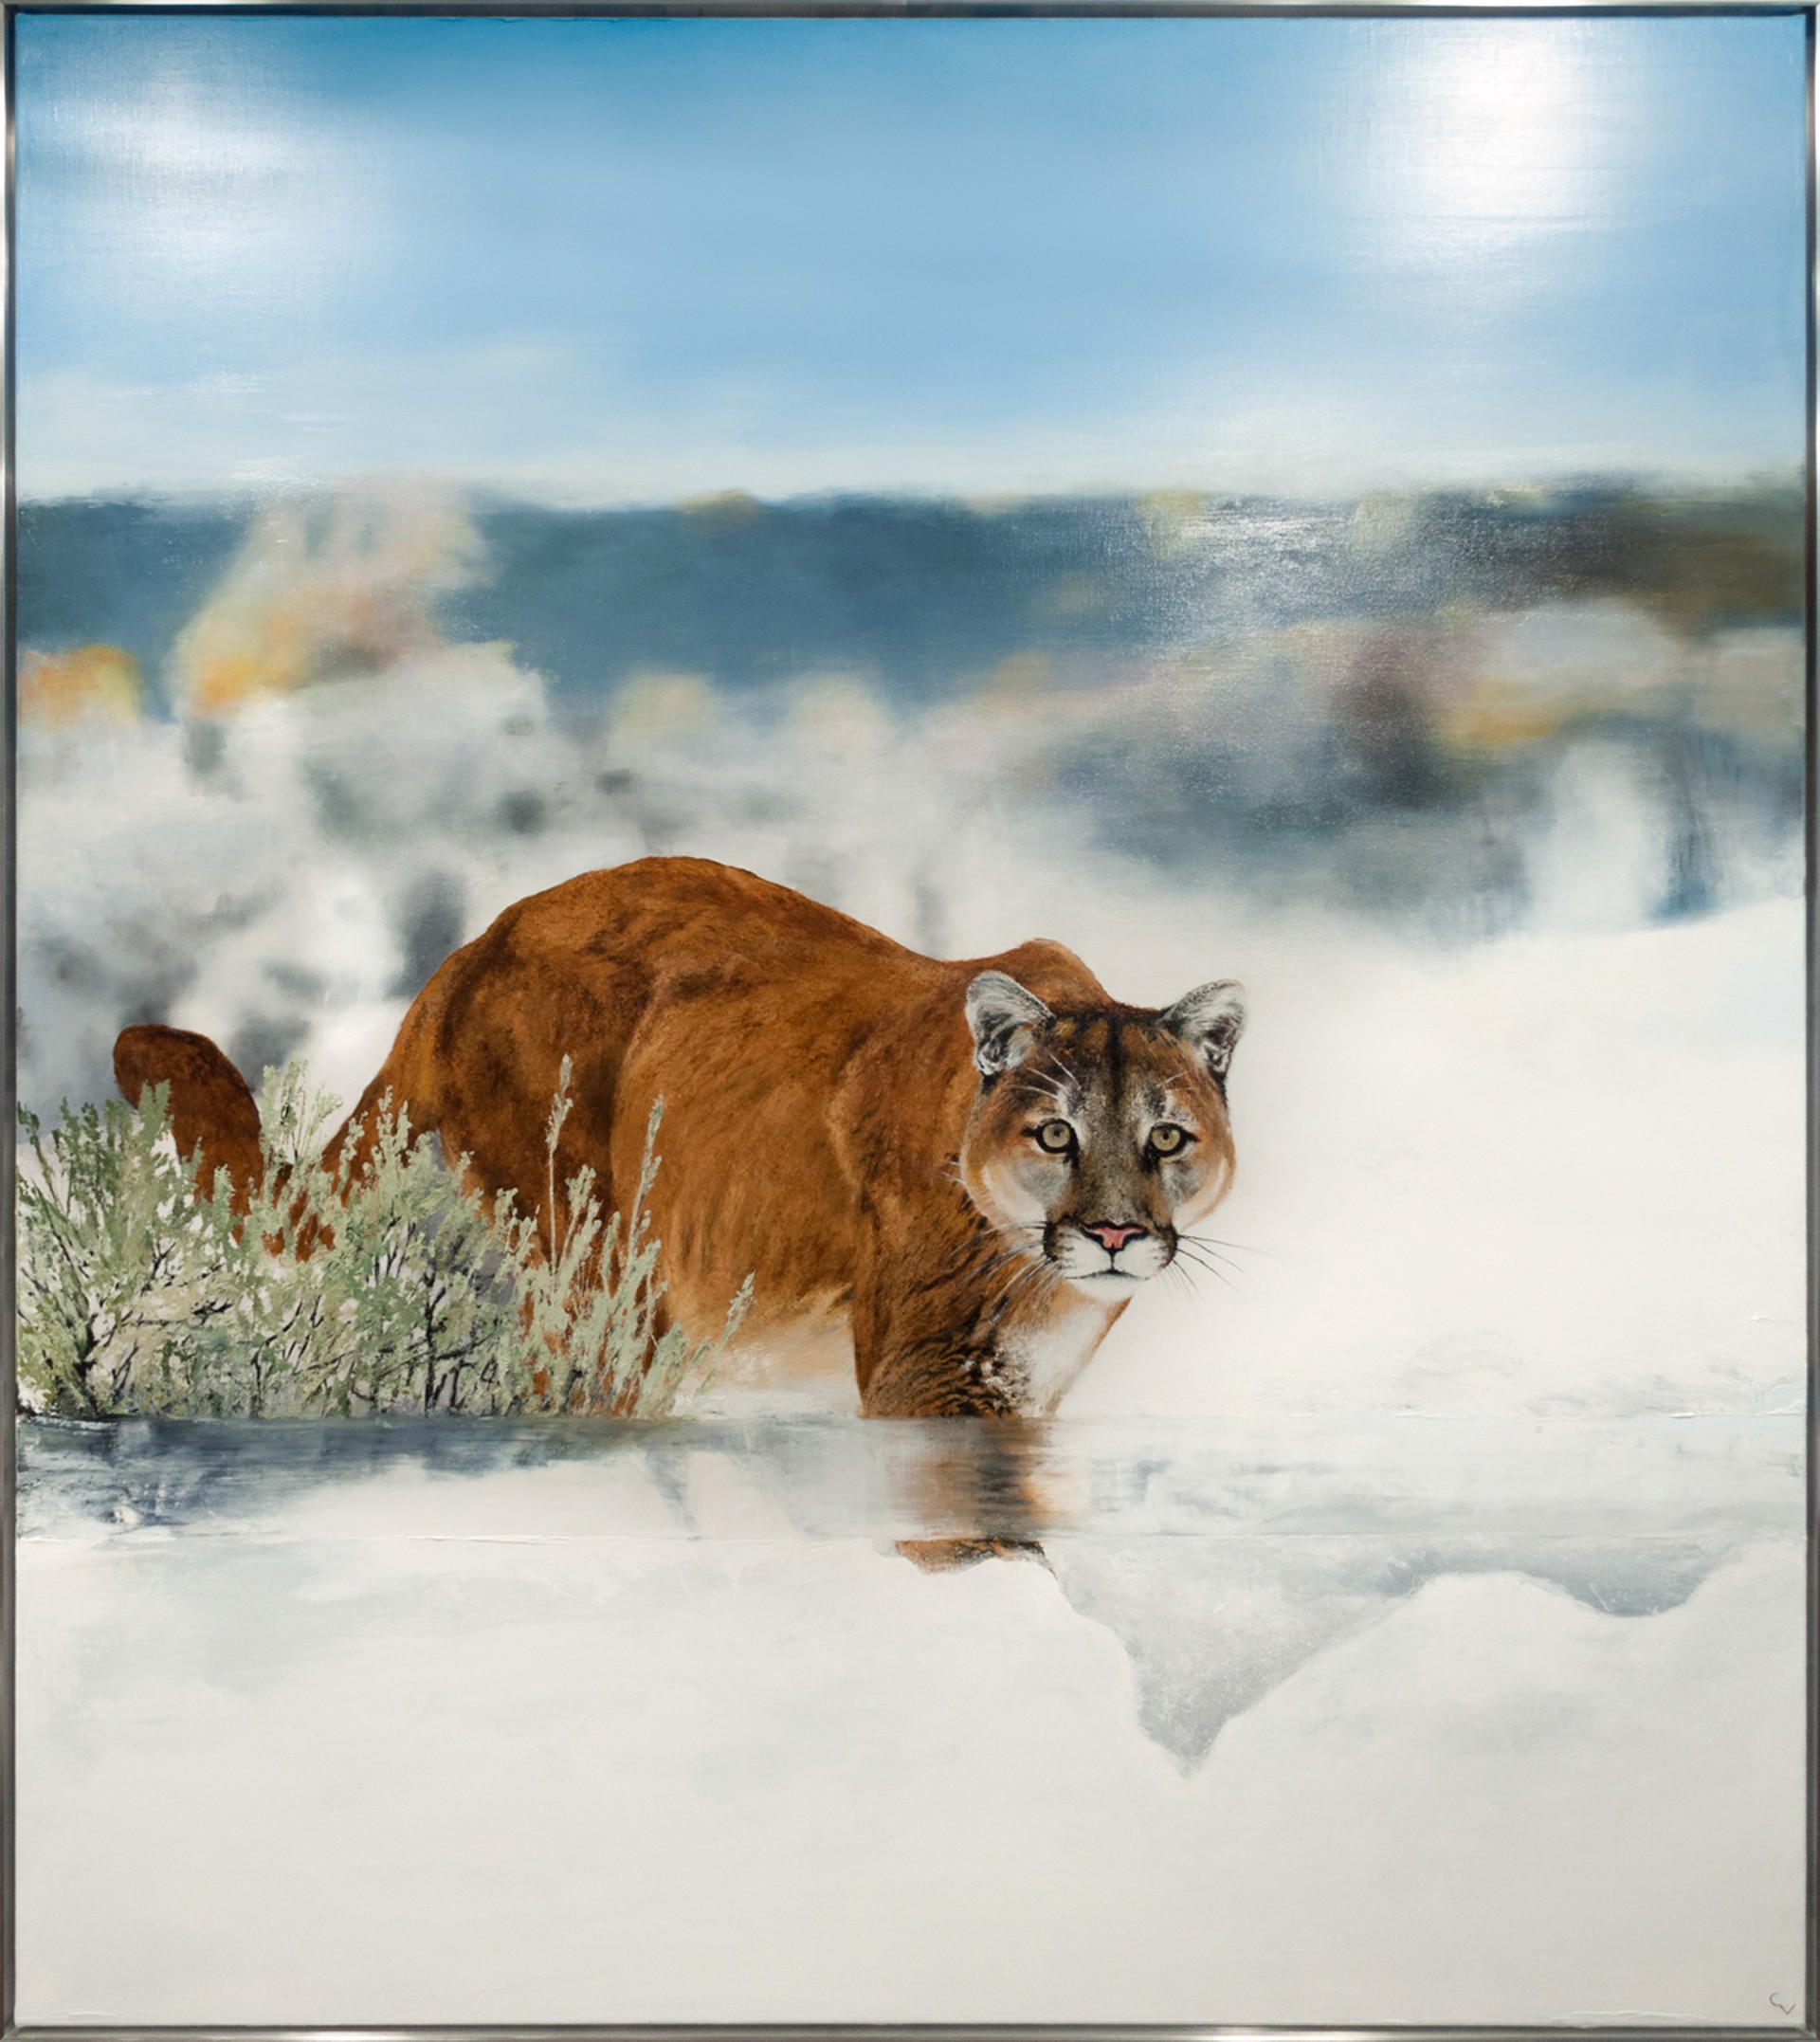 Big Cat by Chris Veeneman